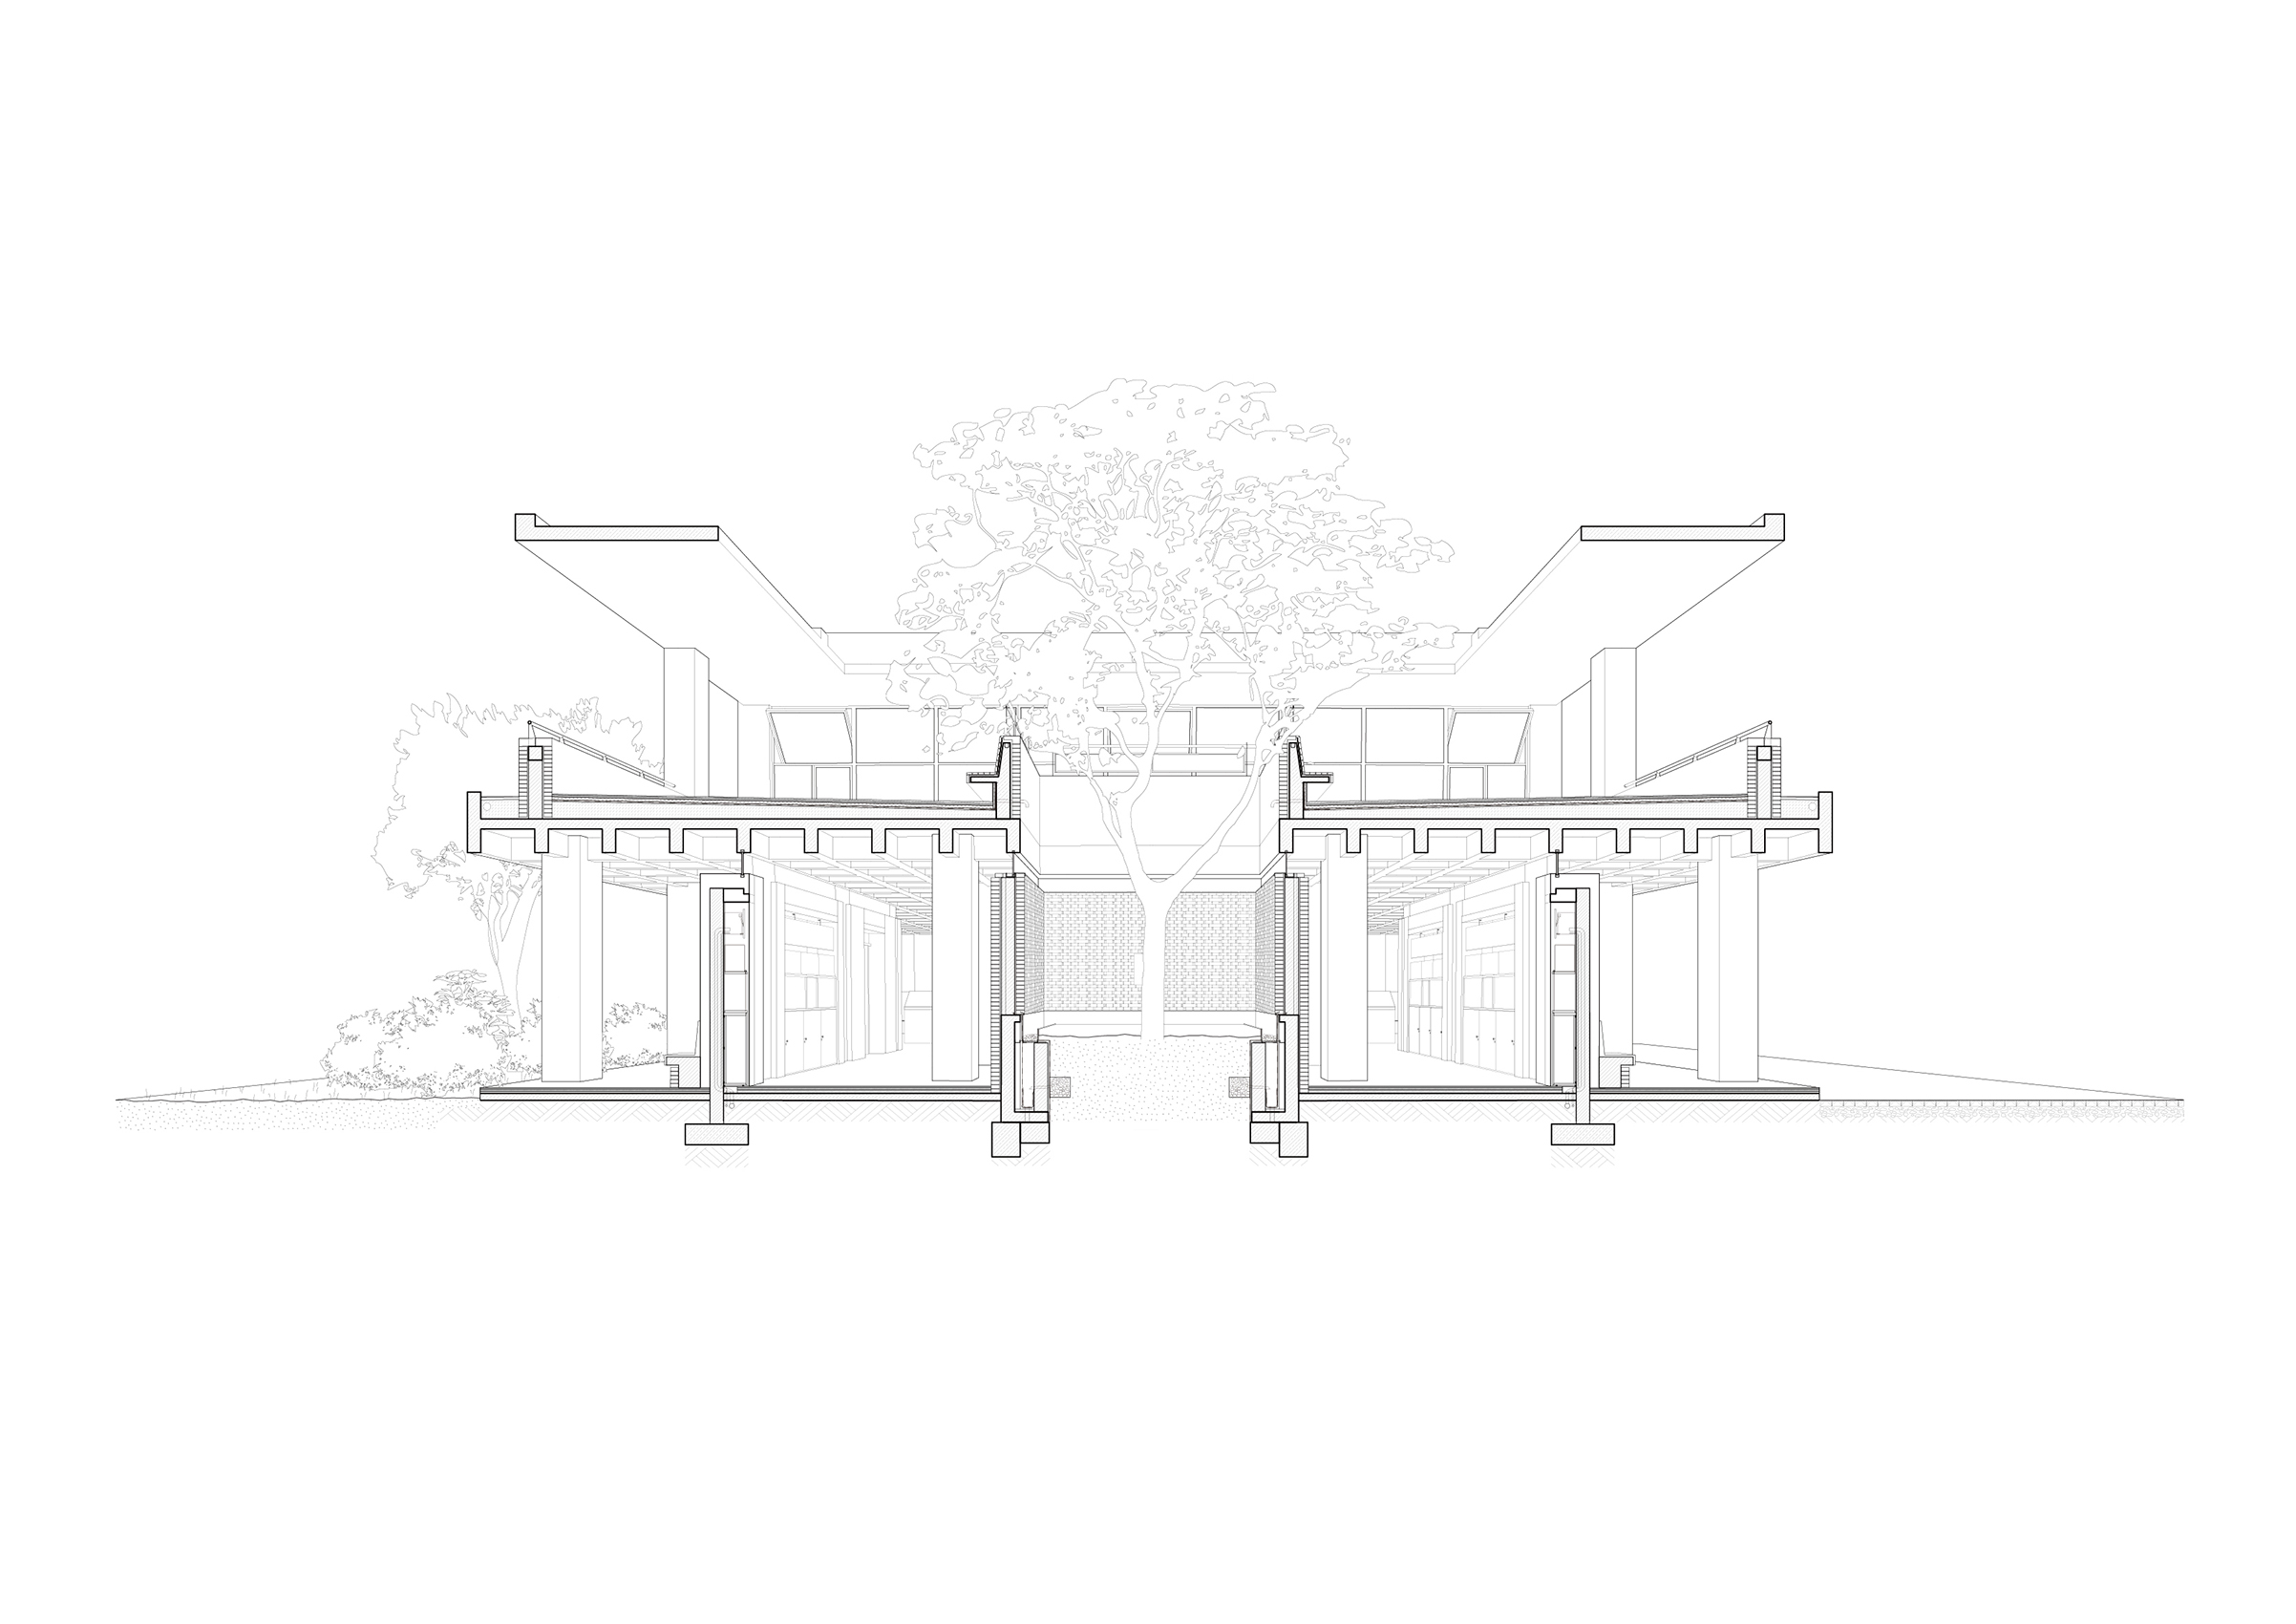 展陈楼剖透视_Perspective section of exhibition building©亘建筑 genarchitects